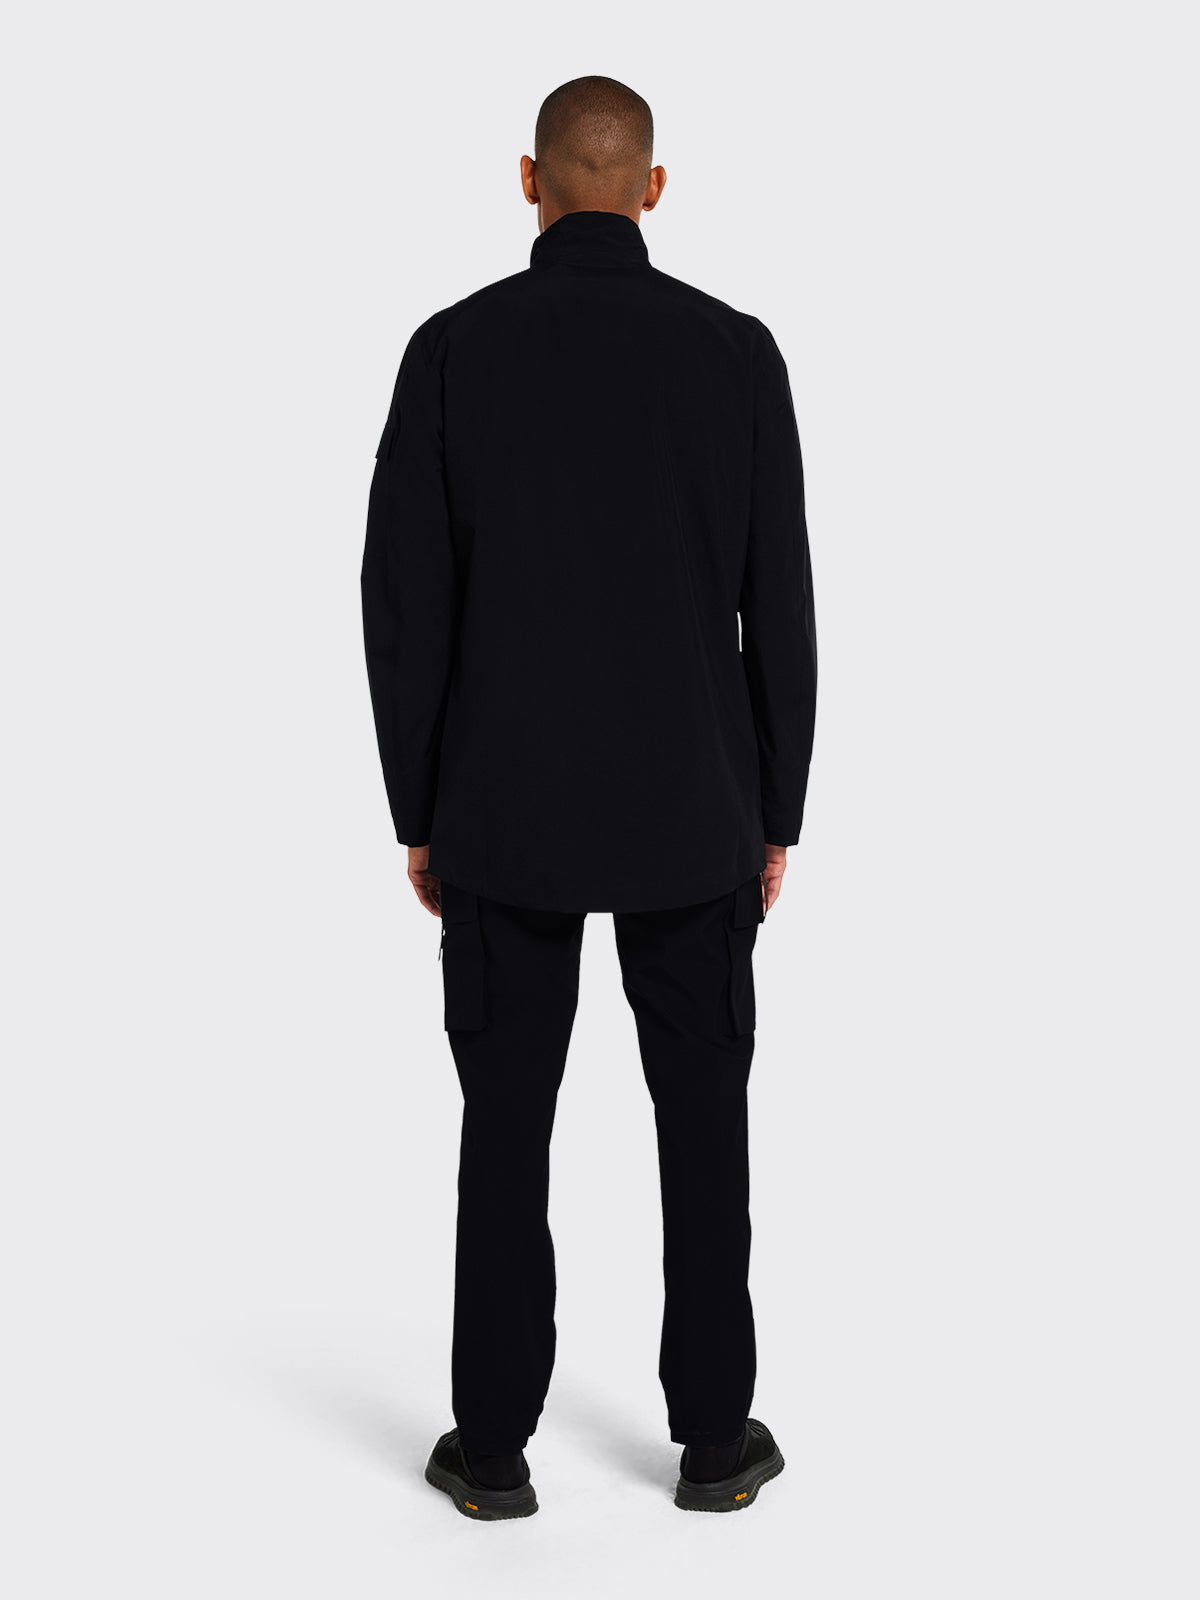 Man dressed in Godøy jacket from Blæst in Black